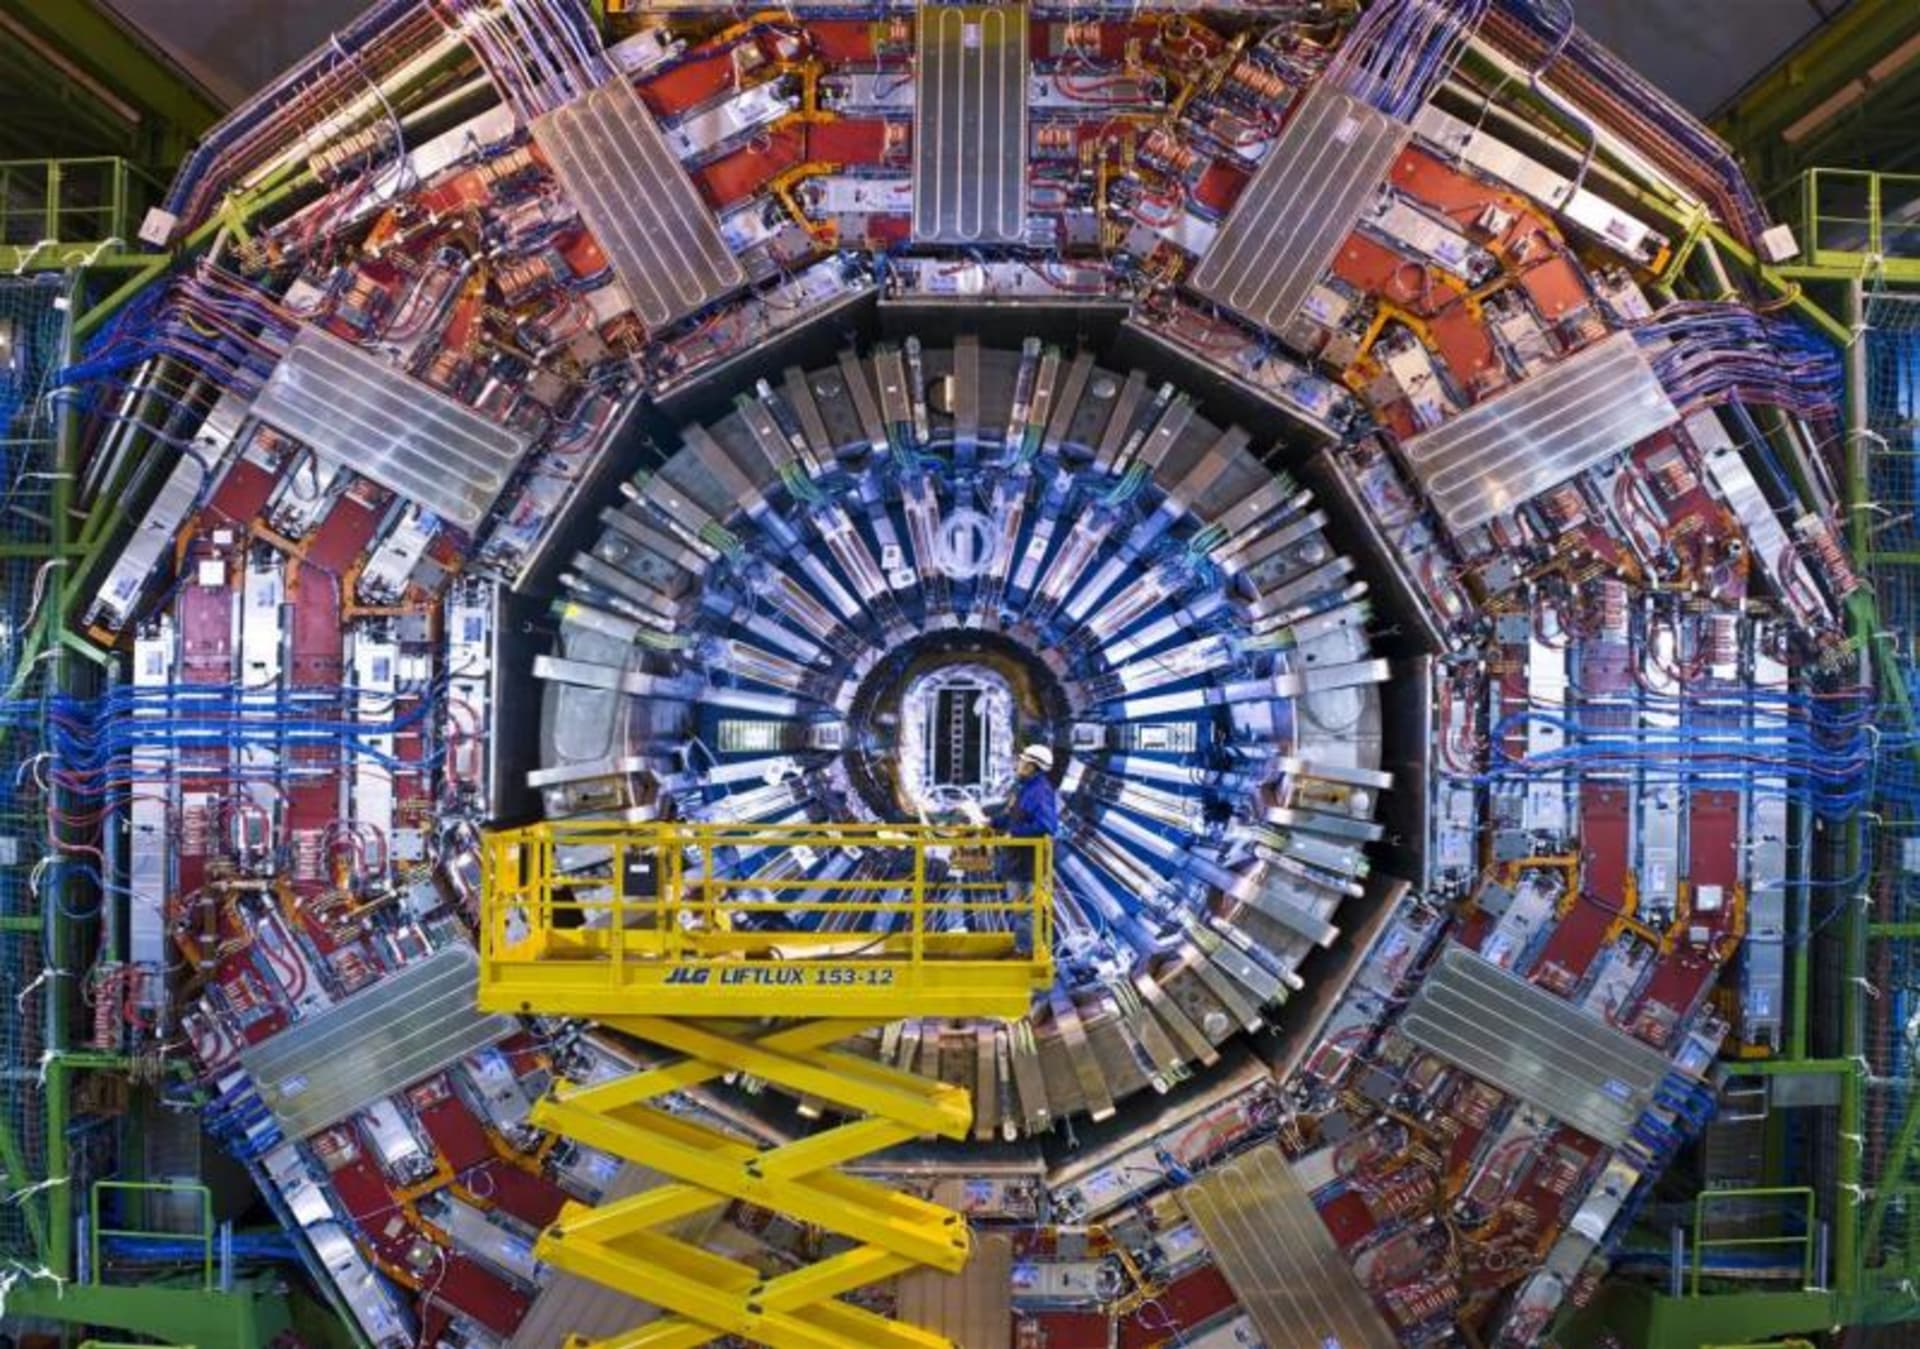 LHC CERN